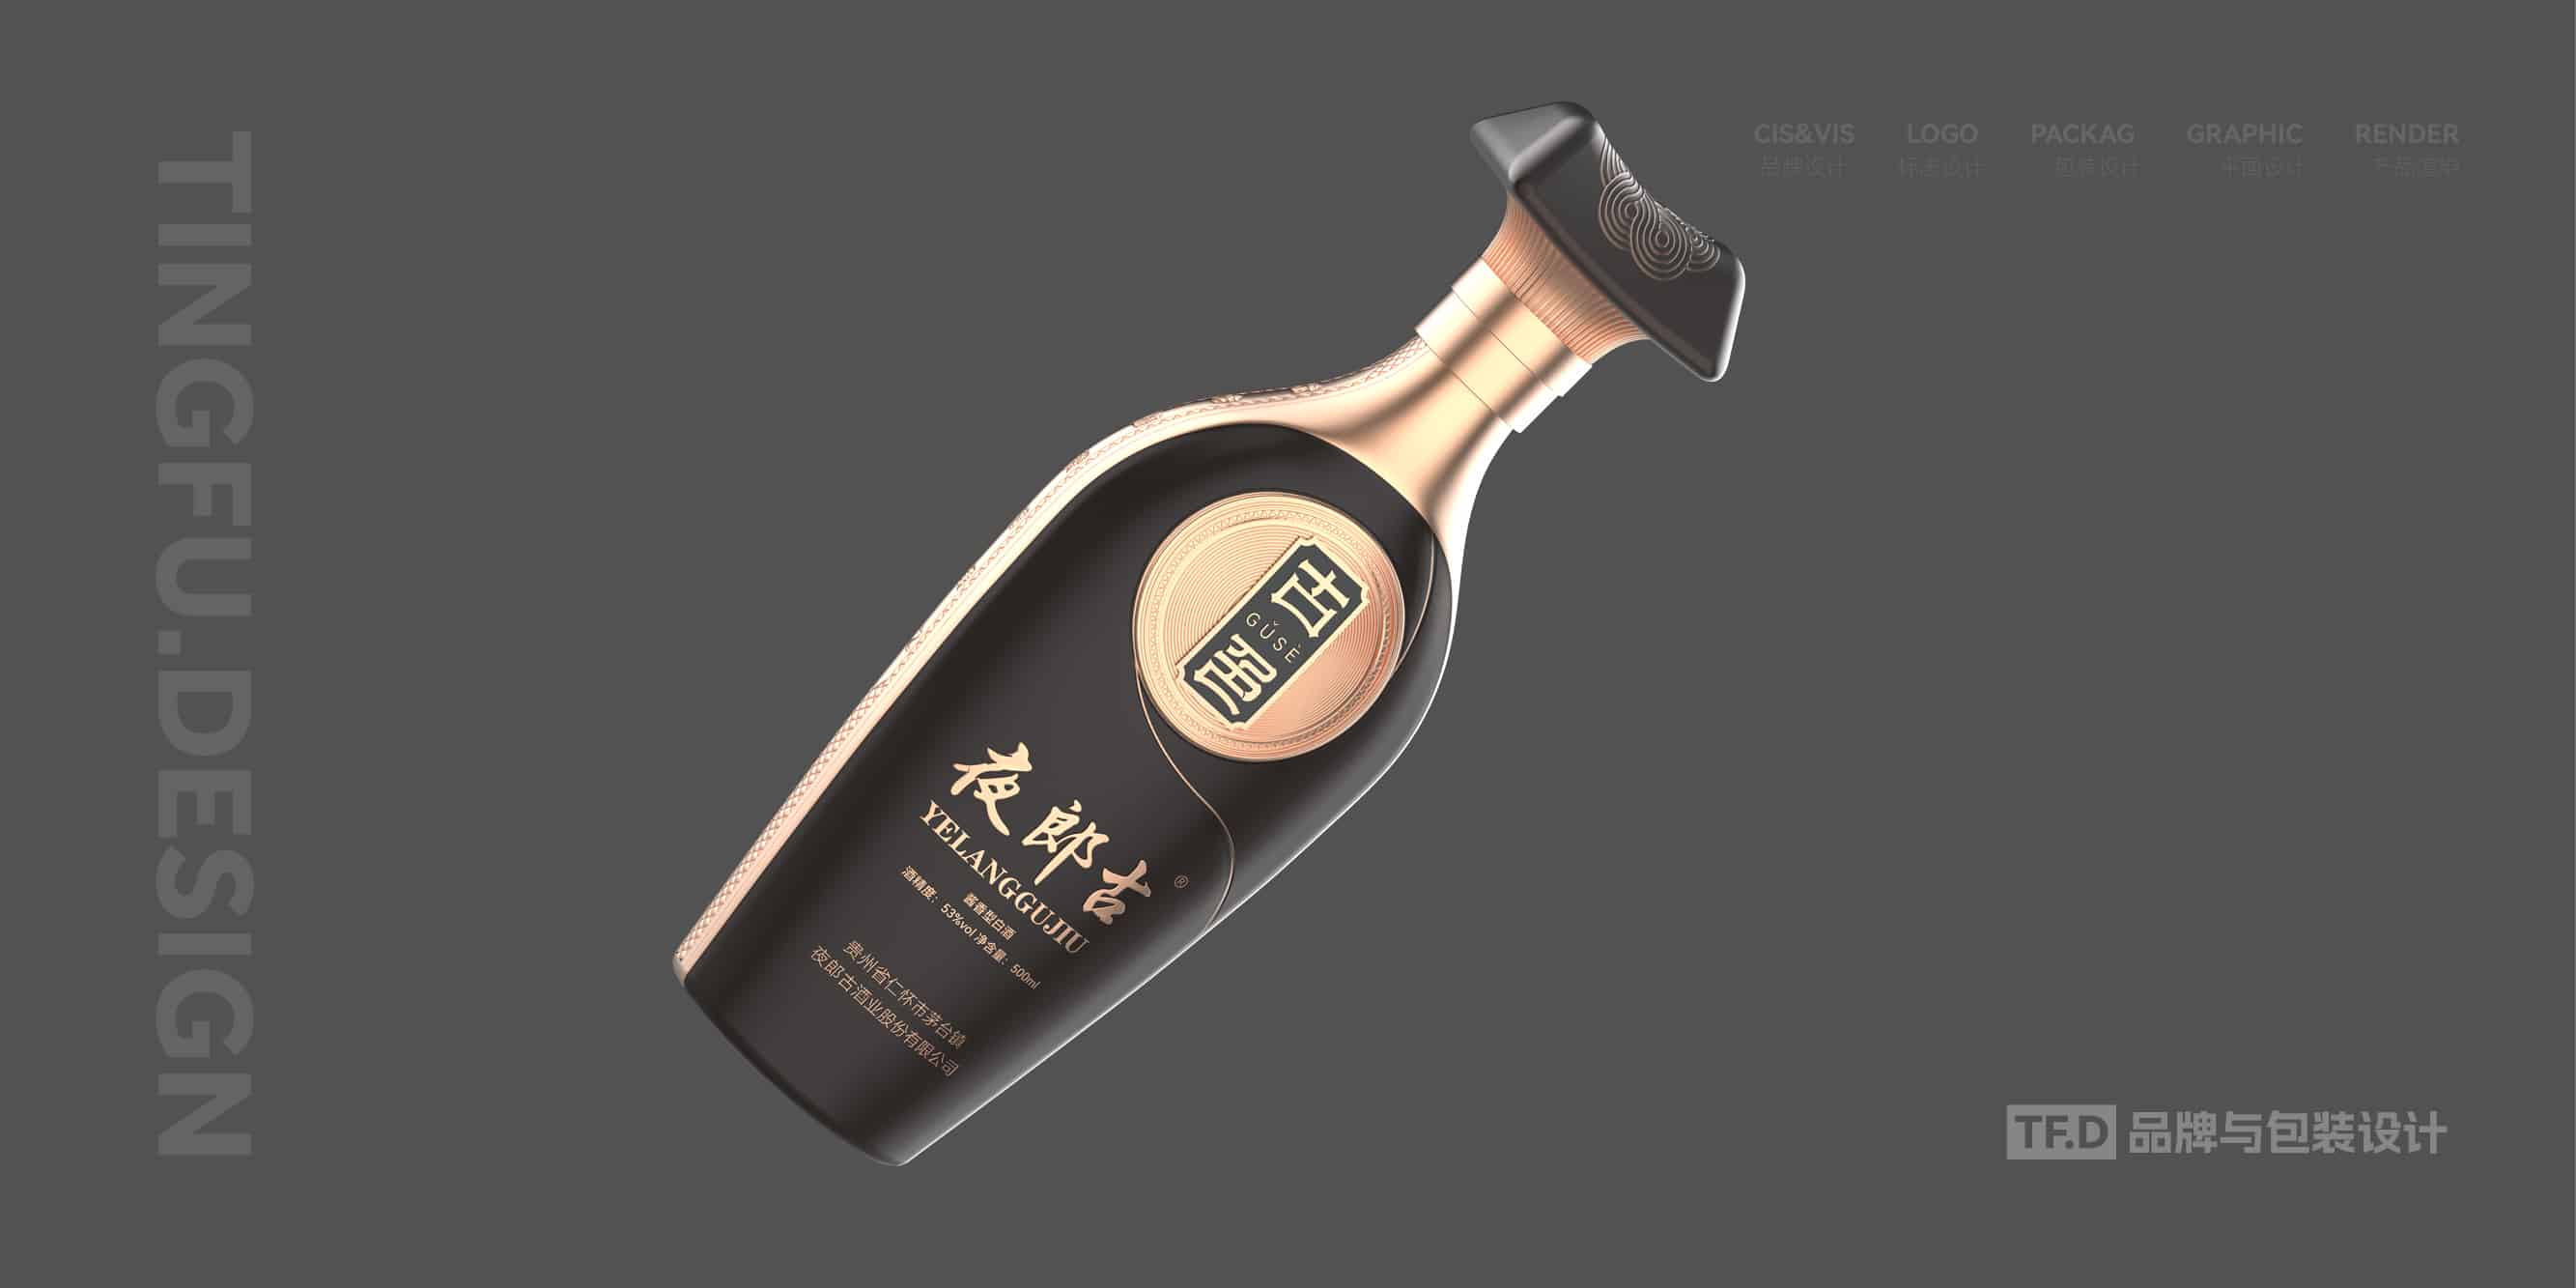 TFD品牌与包装设计-部分酒包装设计案例41-tuya.jpg